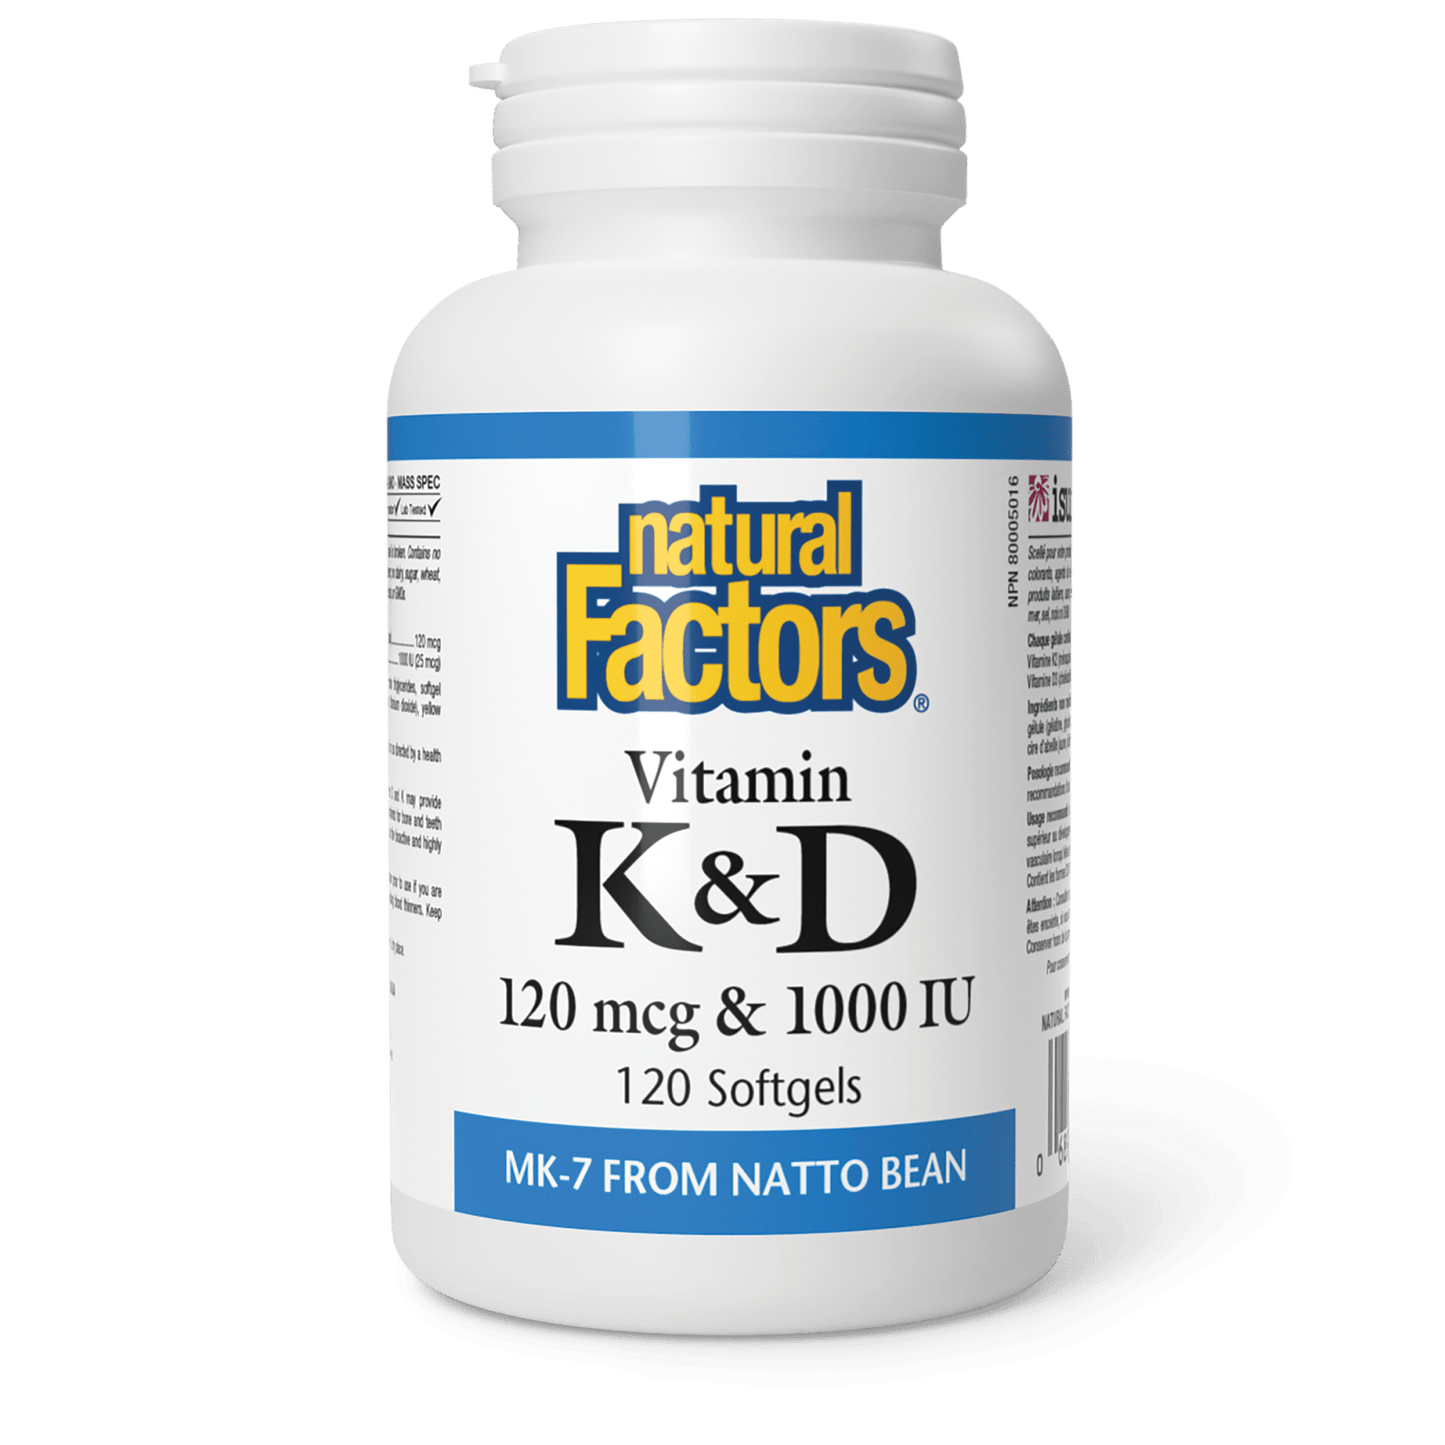 Vitamin K+D 120 mcg/1000 IU, Natural Factors|v|image|1293